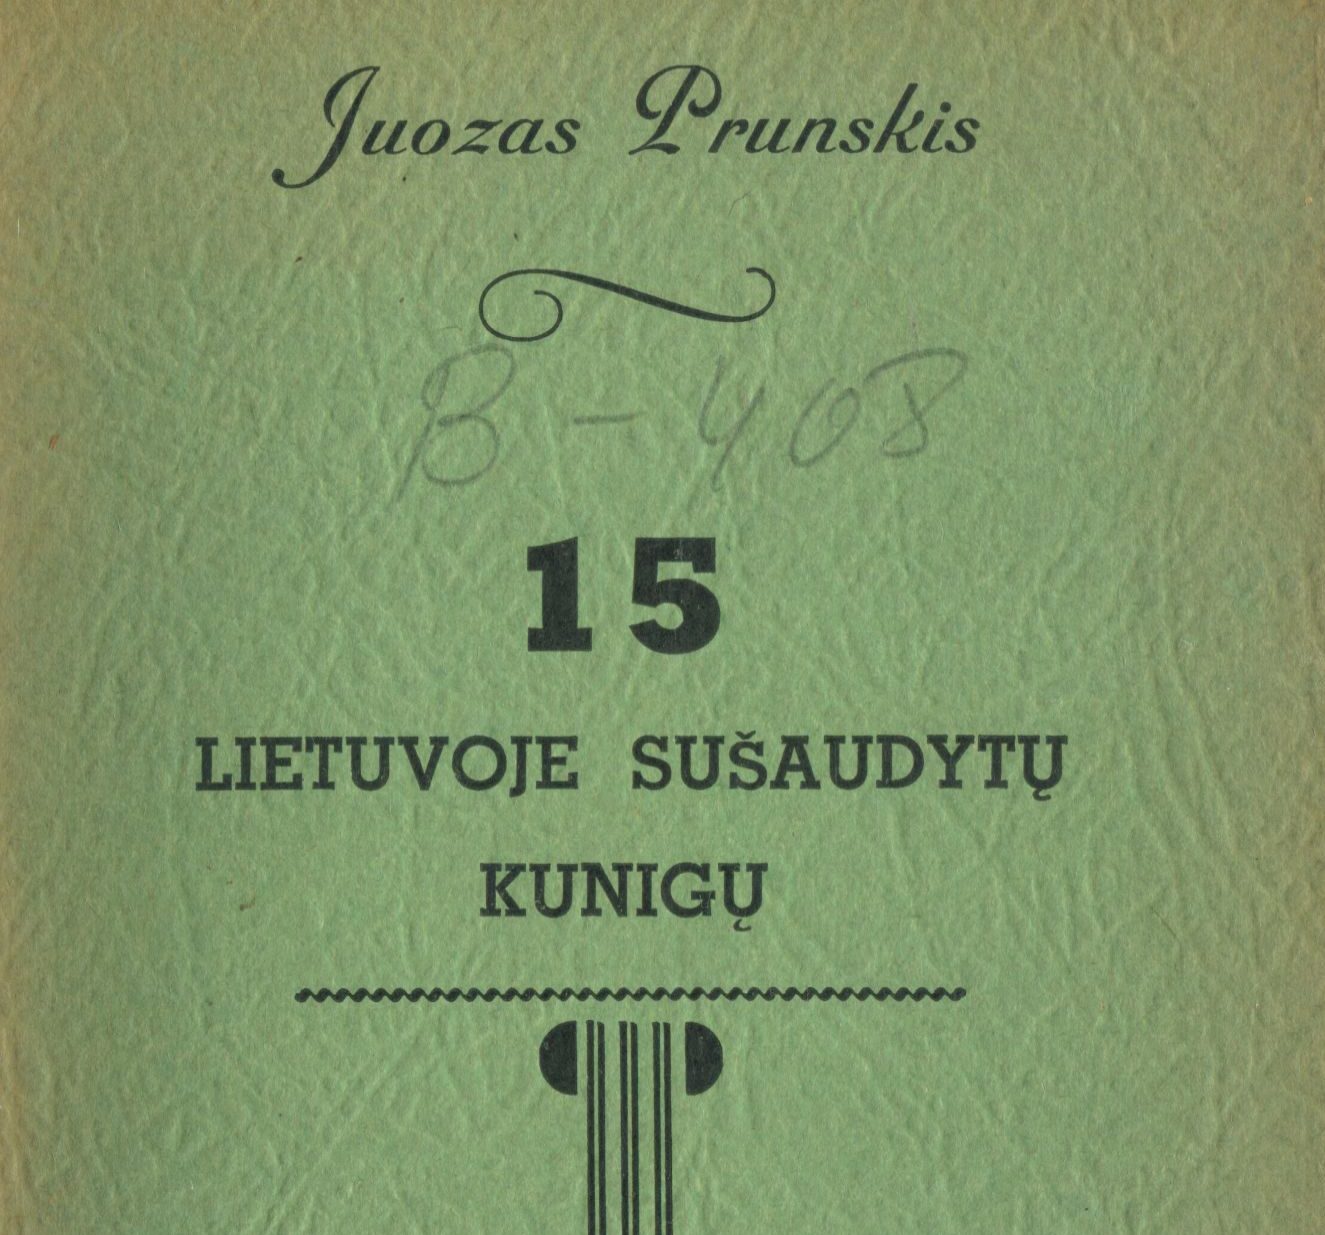 You are currently viewing Juozas Prunskis: 15 Lietuvoj sušaudytų kunigų